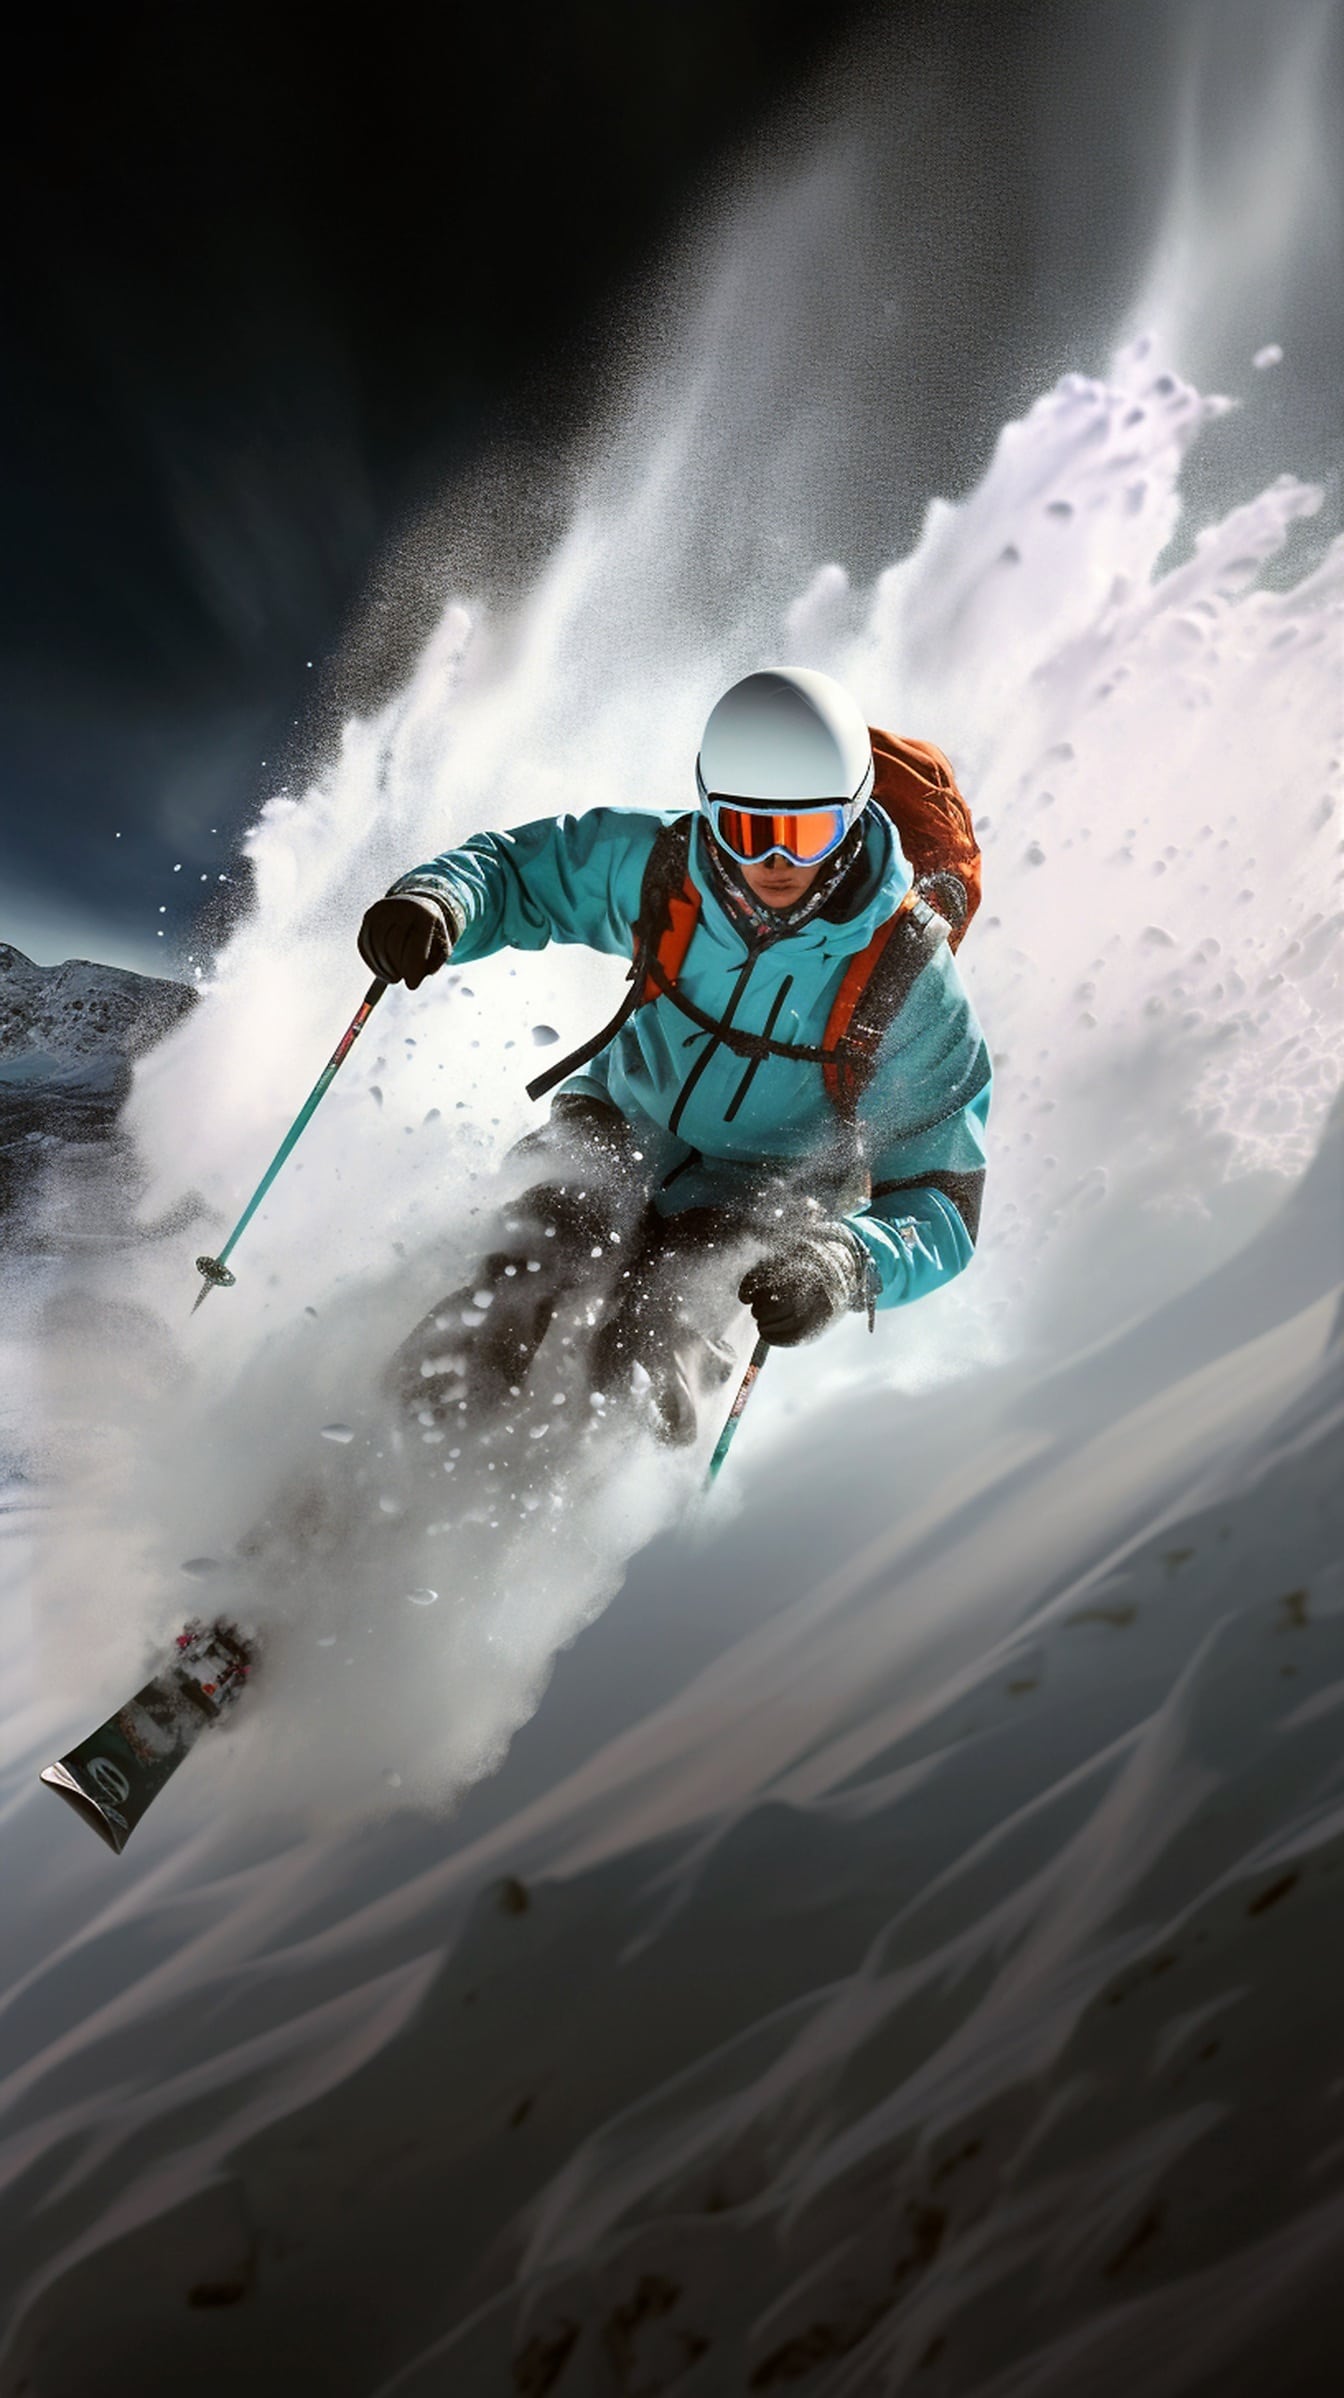 Gros plan d’un skieur de sports extrêmes skiant sur une montagne enneigée